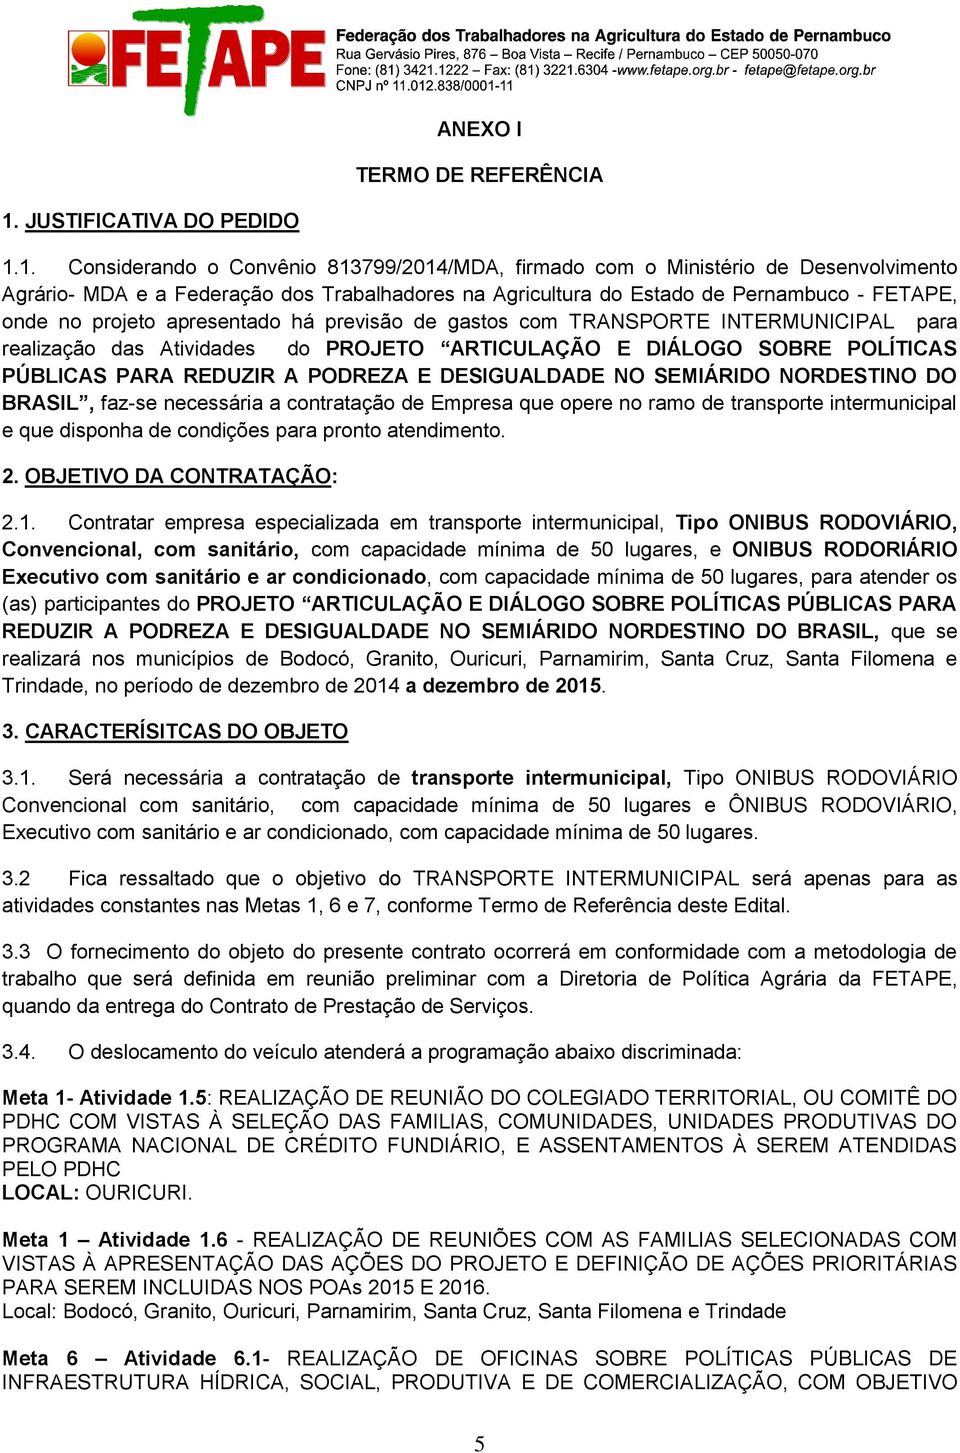 1. Considerando o Convênio 813799/2014/MDA, firmado com o Ministério de Desenvolvimento Agrário- MDA e a Federação dos Trabalhadores na Agricultura do Estado de Pernambuco - FETAPE, onde no projeto